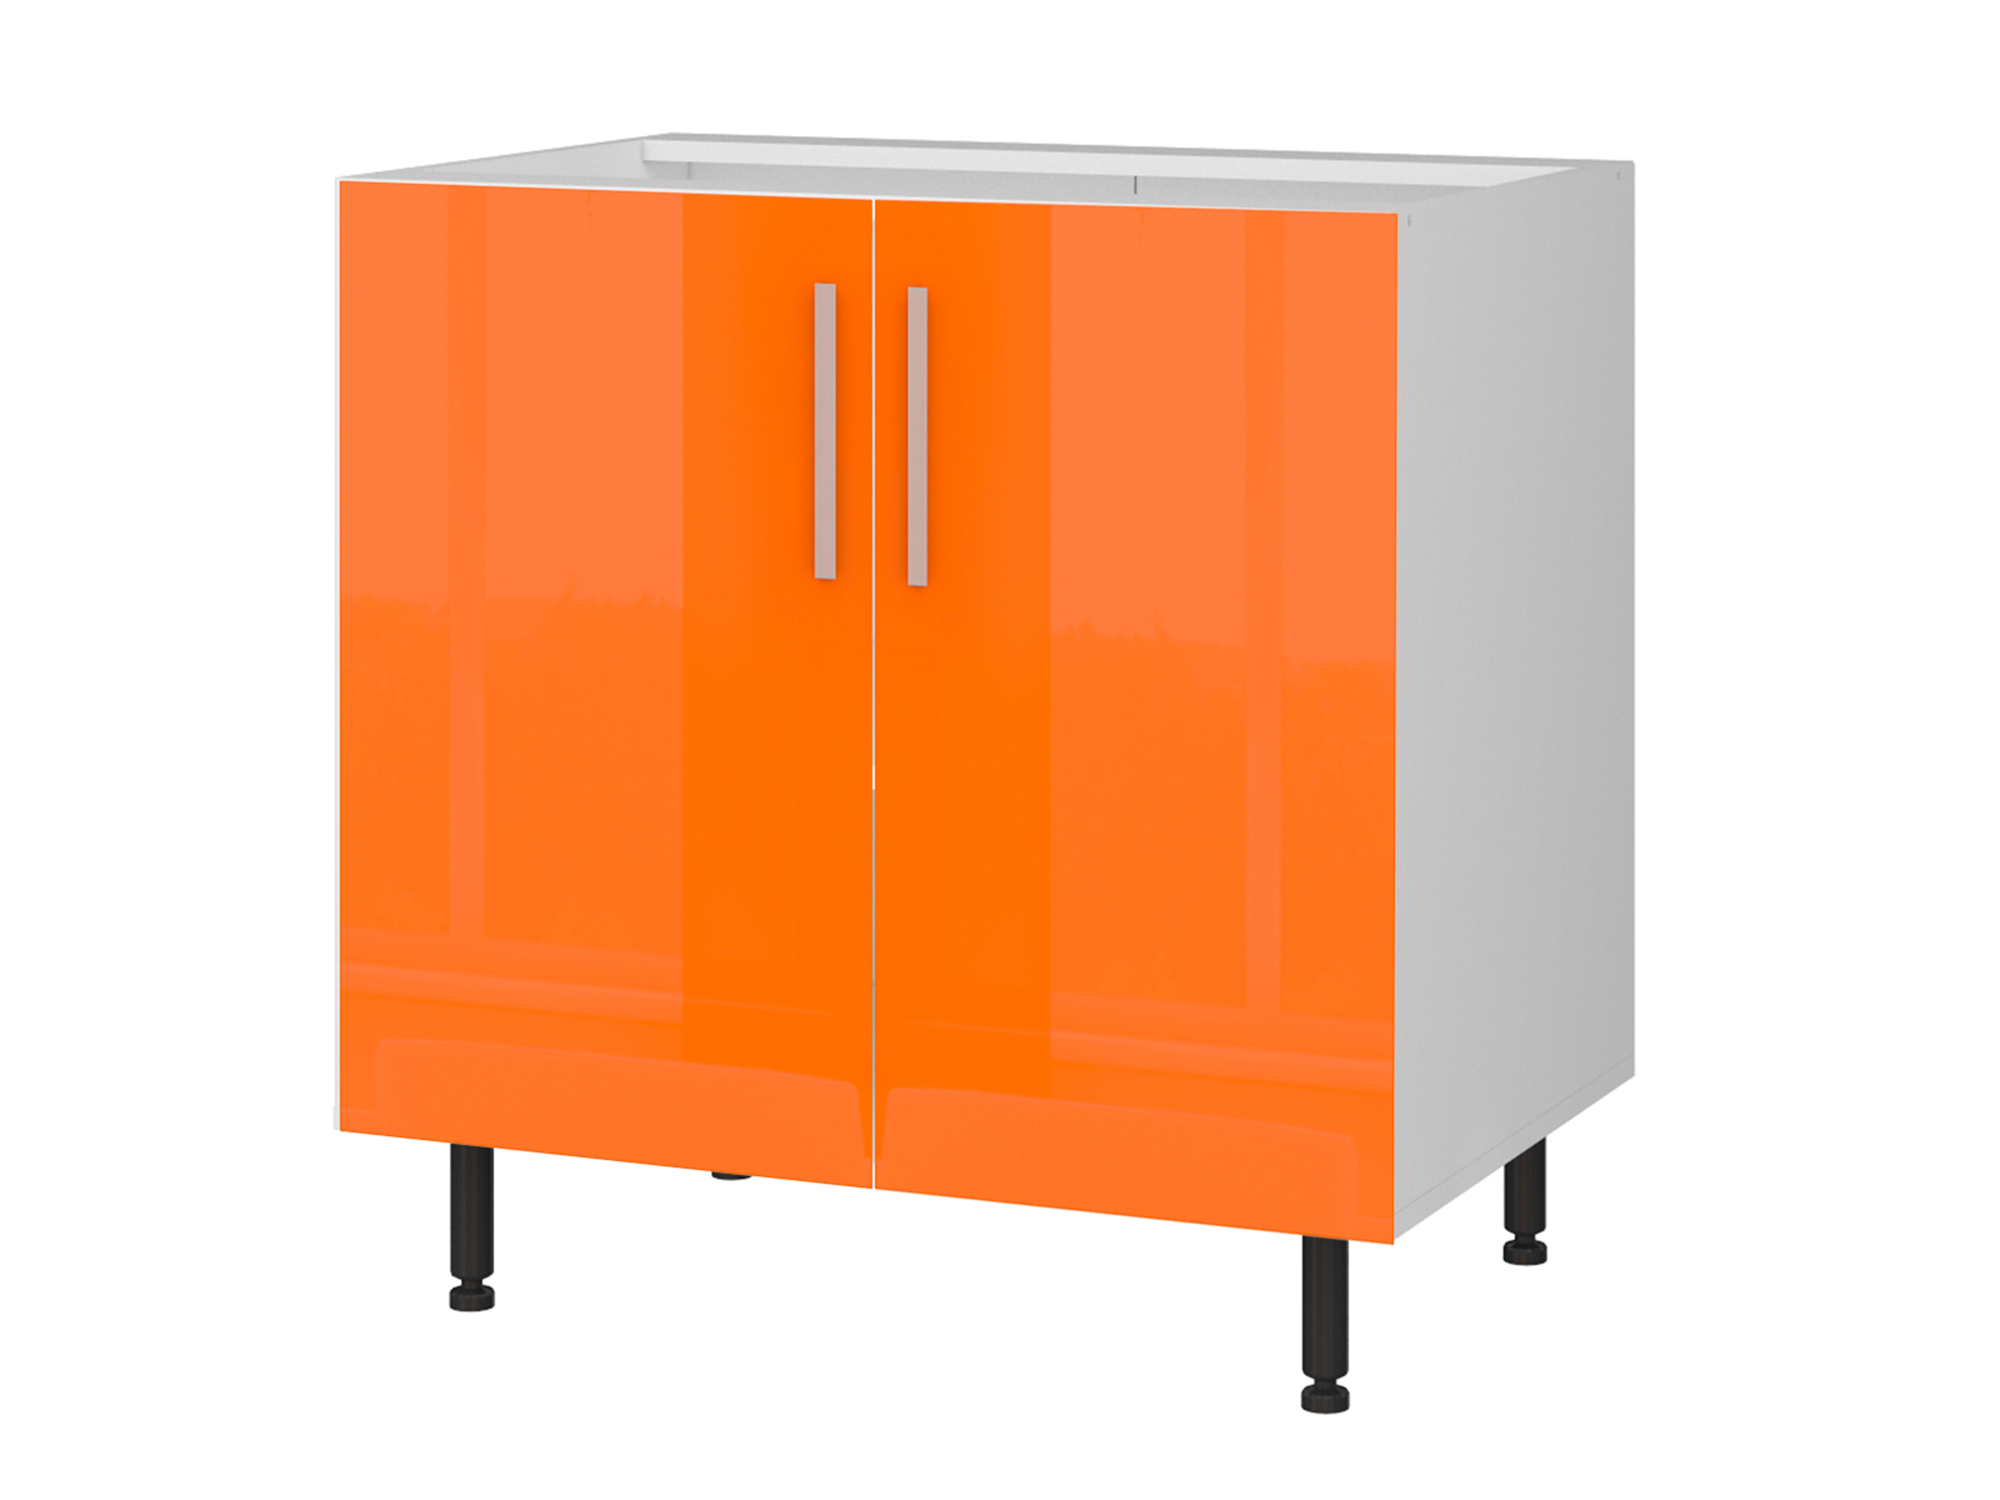 Шкаф напольный двухдверный Хелена 80 см Оранжевый, Белый, МДФ, Пленка ПВХ, ЛДСП шкаф напольный двухдверный хелена 80 см оранжевый белый мдф пленка пвх лдсп